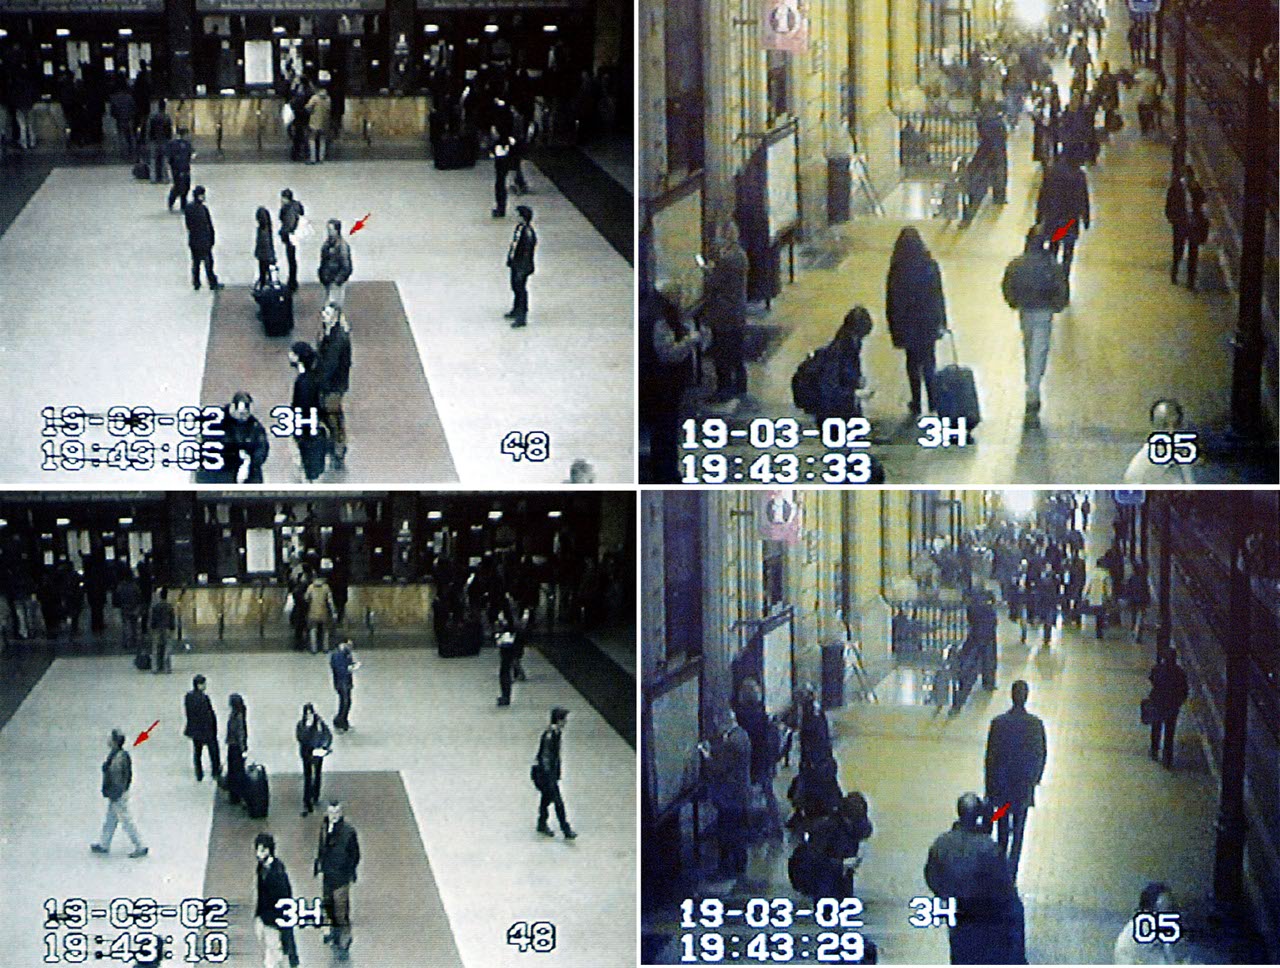  Le immagini delle telecamere della stazione di Bologna la sera dell’attentato, con indicati i possibili sospetti secondo gli inquirenti (Corriere.it)